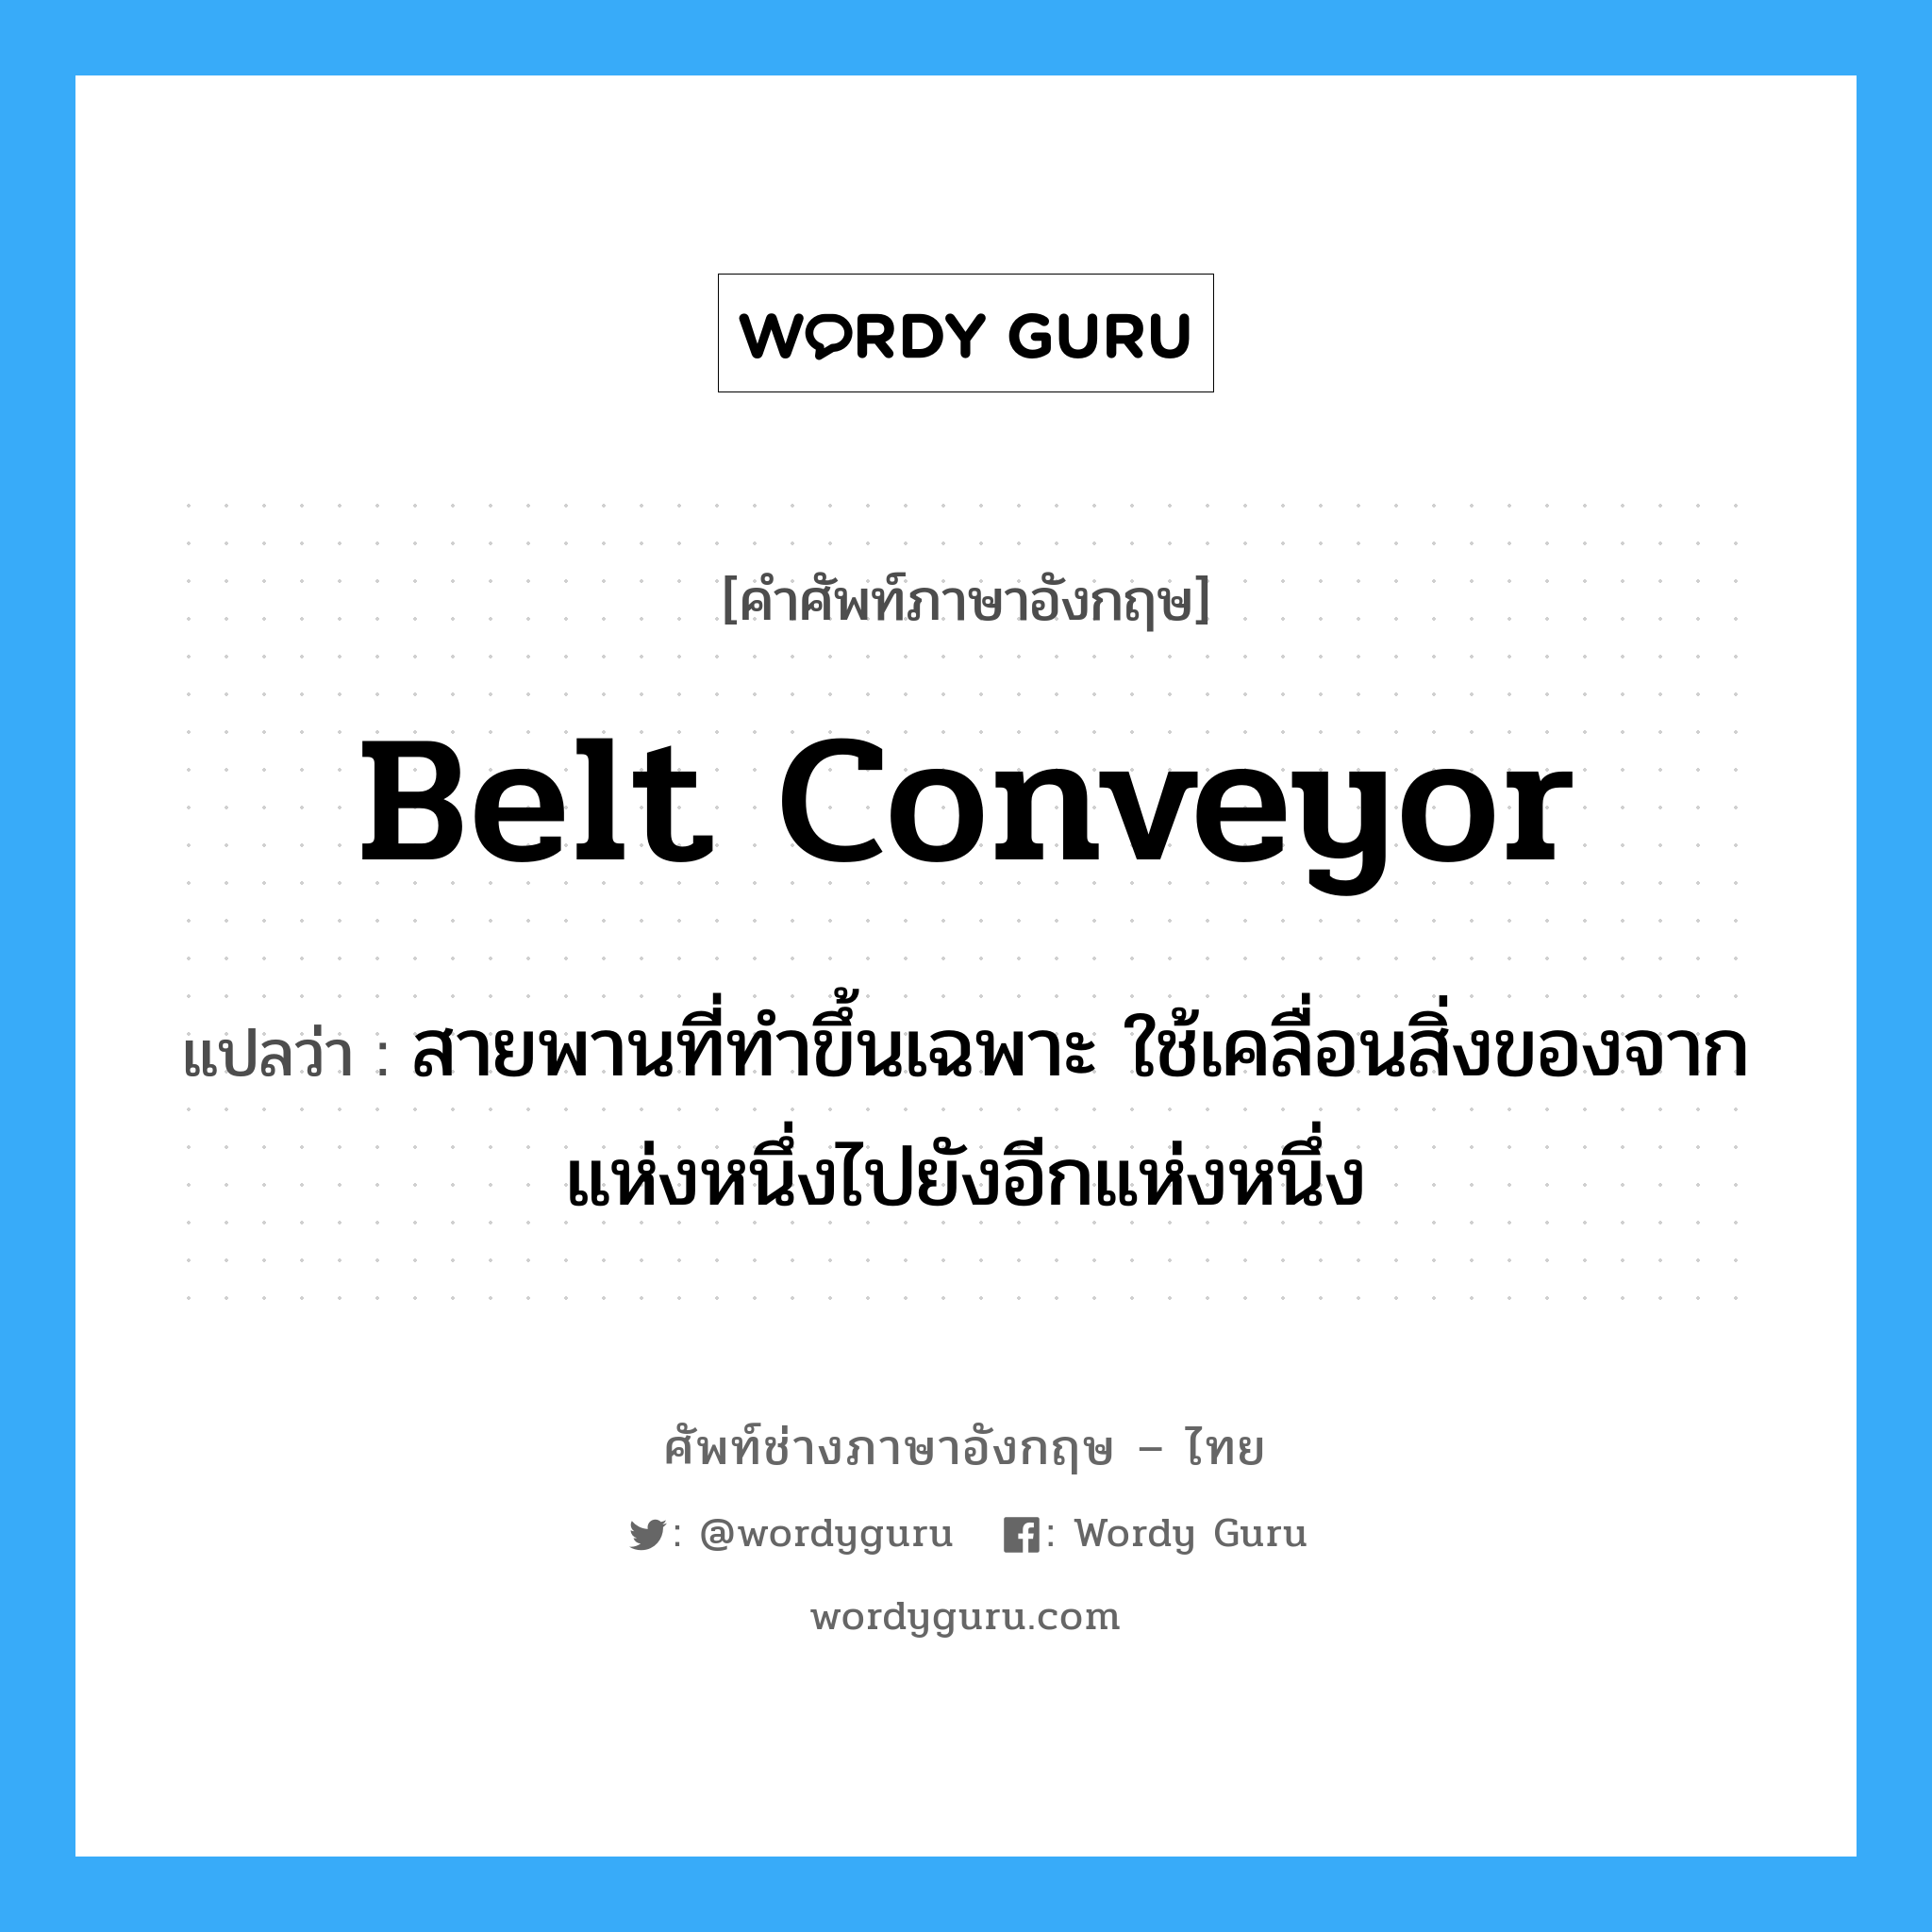 belt conveyor แปลว่า?, คำศัพท์ช่างภาษาอังกฤษ - ไทย belt conveyor คำศัพท์ภาษาอังกฤษ belt conveyor แปลว่า สายพานที่ทำขึ้นเฉพาะ ใช้เคลื่อนสิ่งของจากแห่งหนึ่งไปยังอีกแห่งหนึ่ง